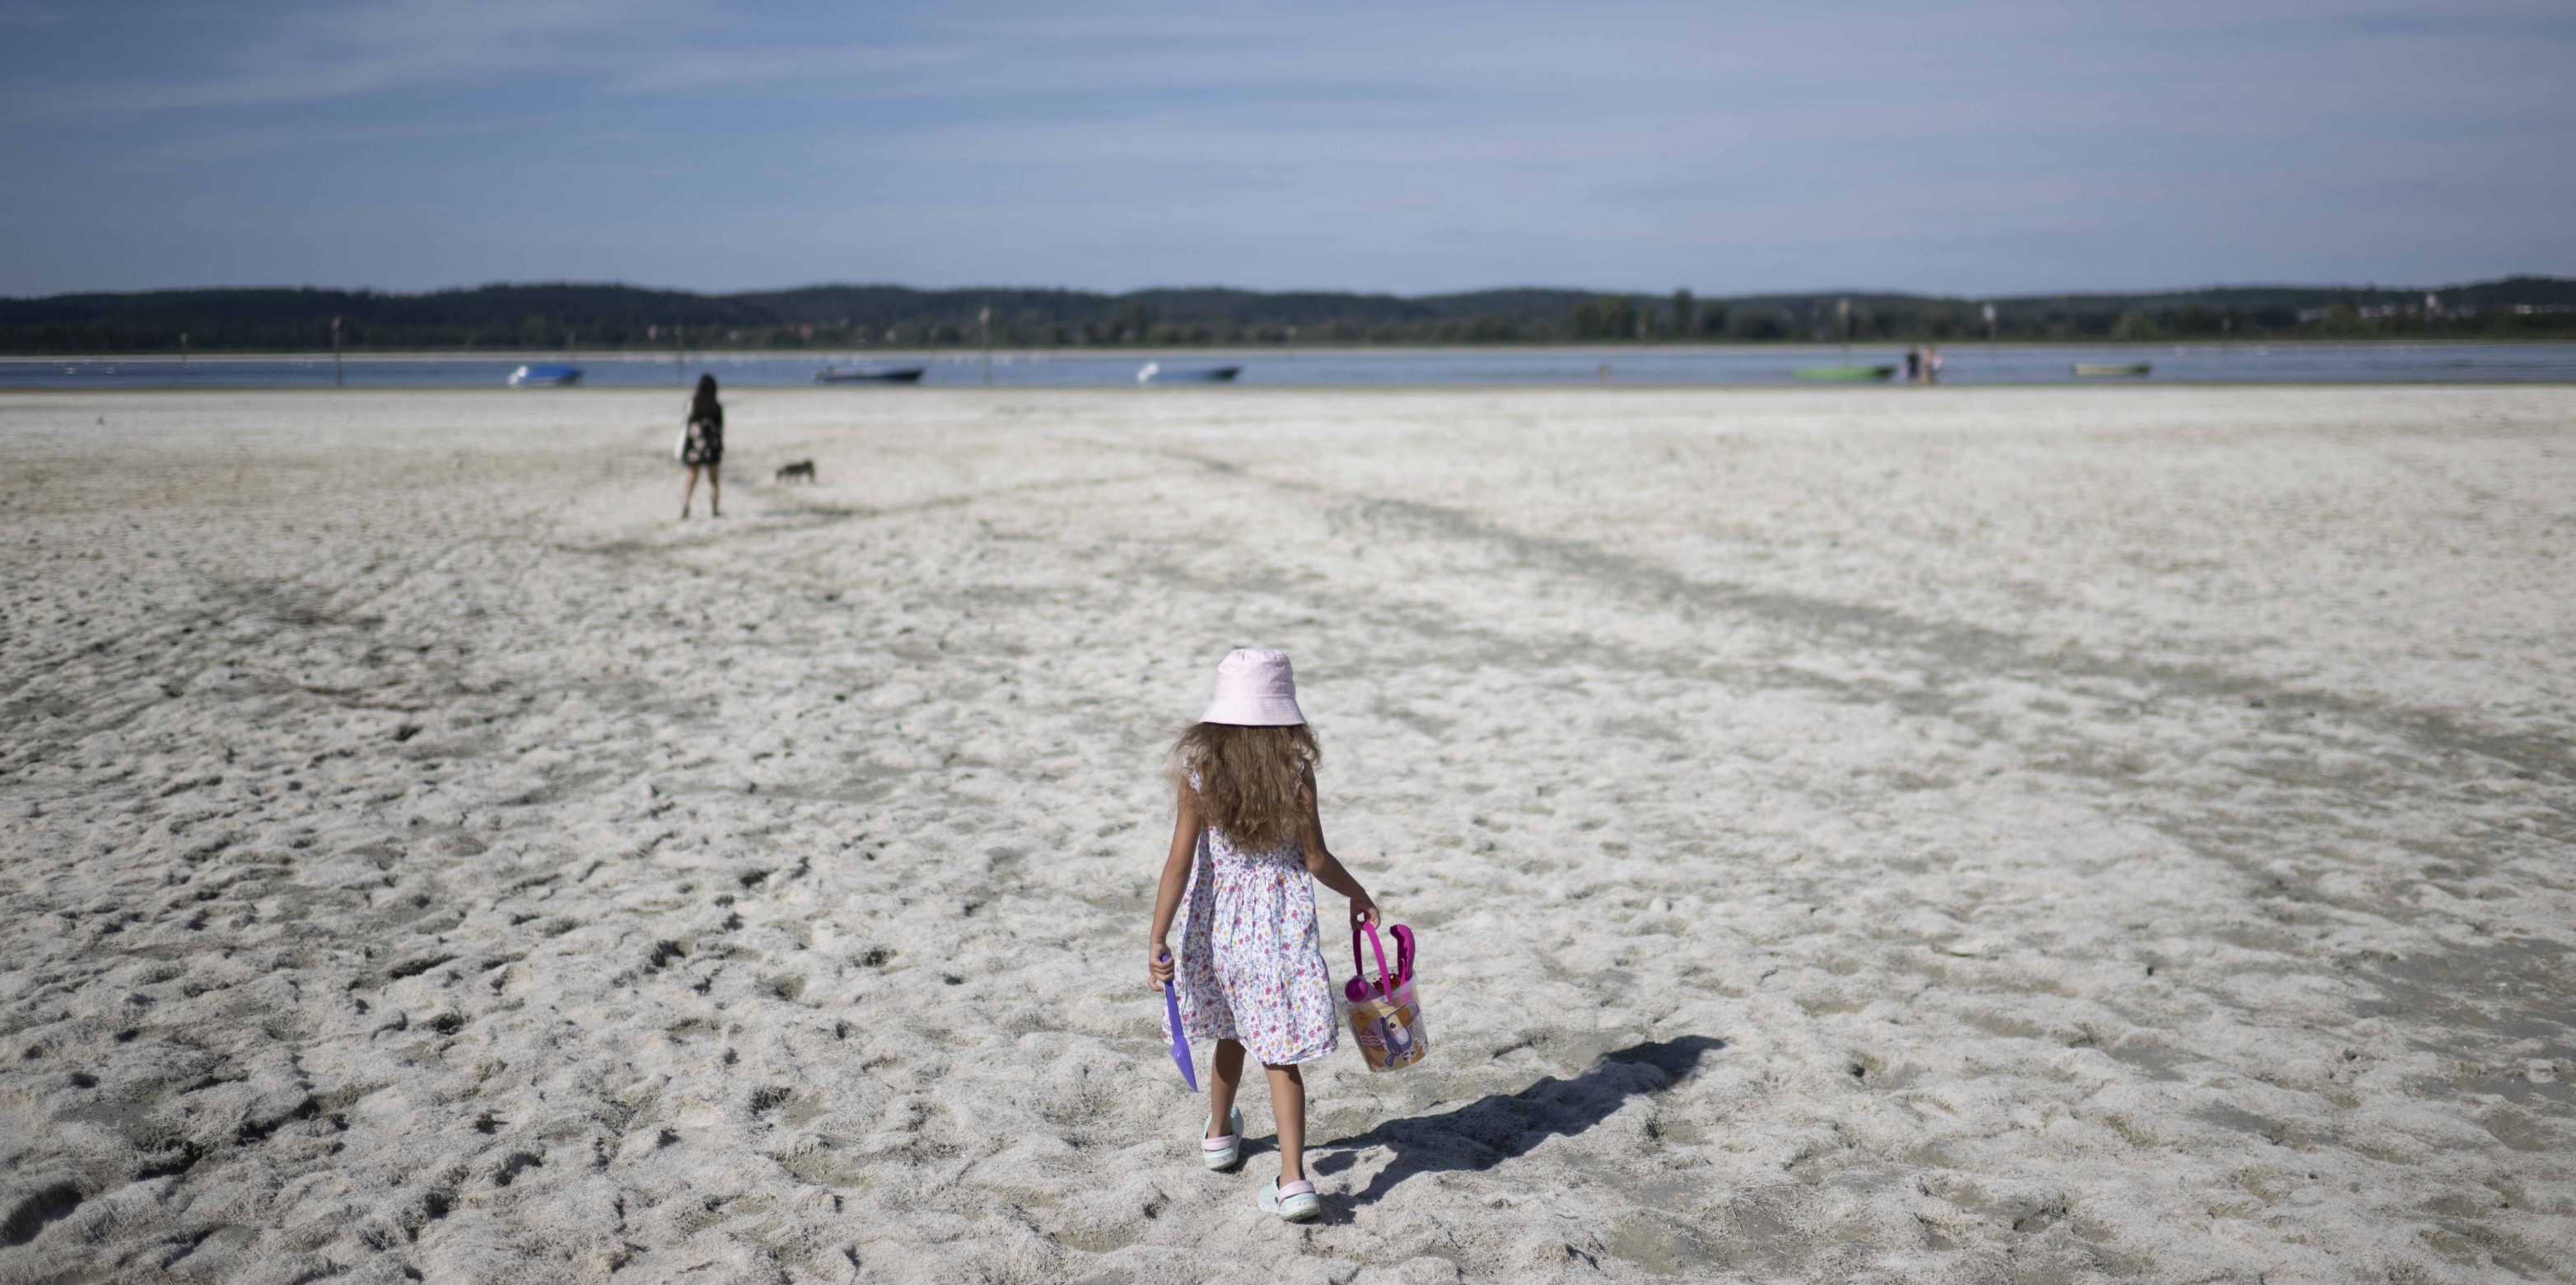 Ein kleines Mädchen geht auf Sand, in der Hand hat sie ein Kesselchen und eine Schaufel. Im Hintergrund ist eine Frau mit einem Hund und das Meer zu erkennen.